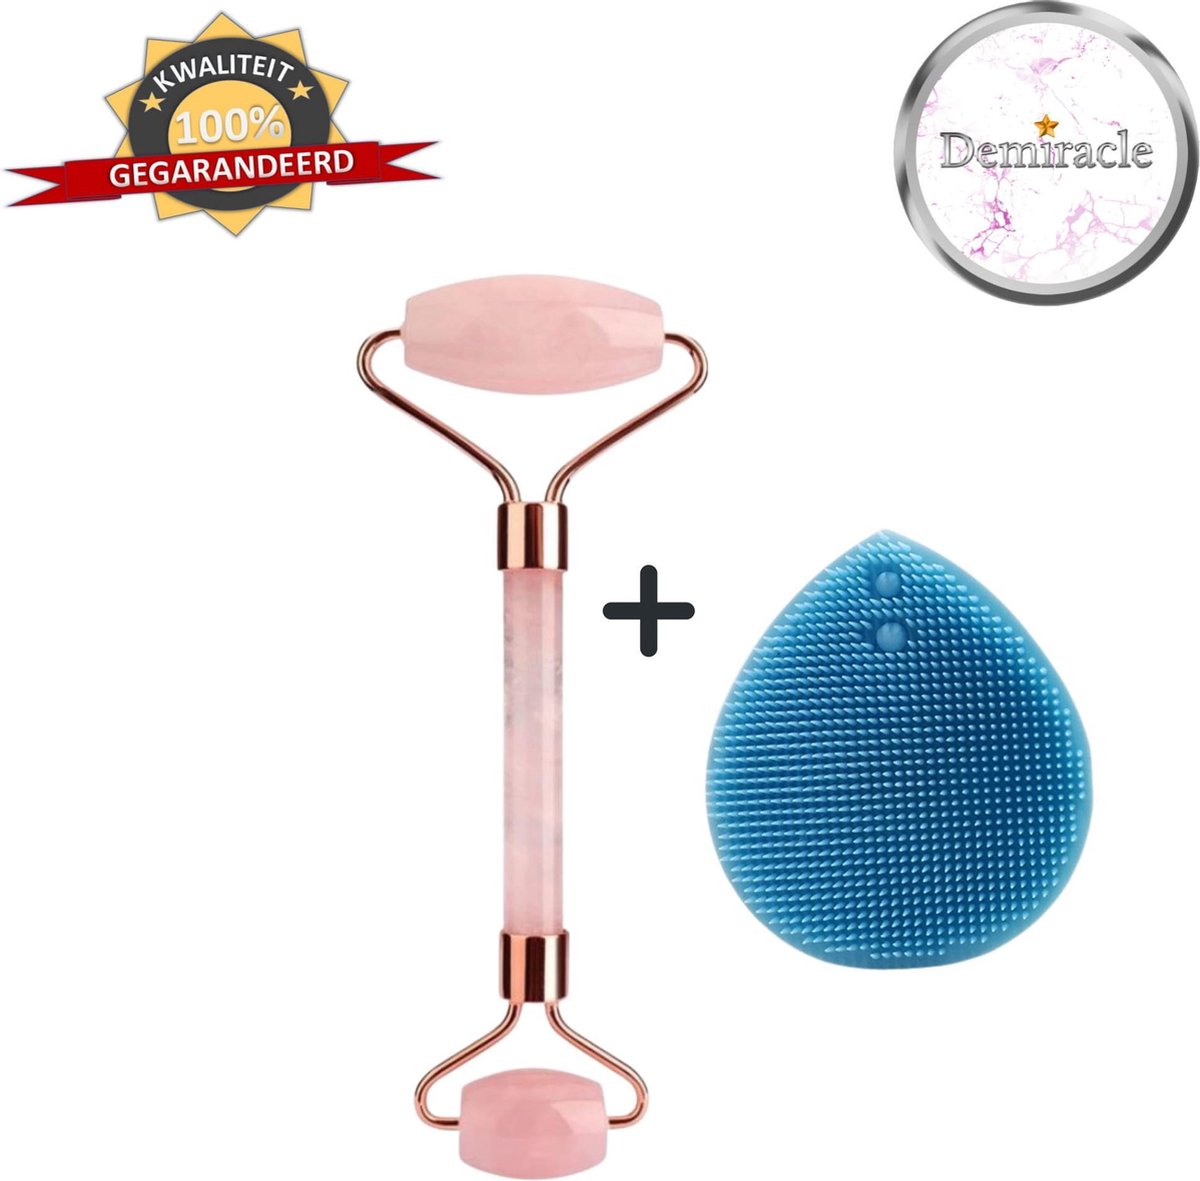 Demiracle Rose Quartz Face Roller met Blauwe Siliconen Gezichtsborstel - Valentijnsdag - Cadeau - Gezichtsroller - Massage Roller - Jade Roller - Rimpelverwijdering - Ontspanning - Kwaliteit